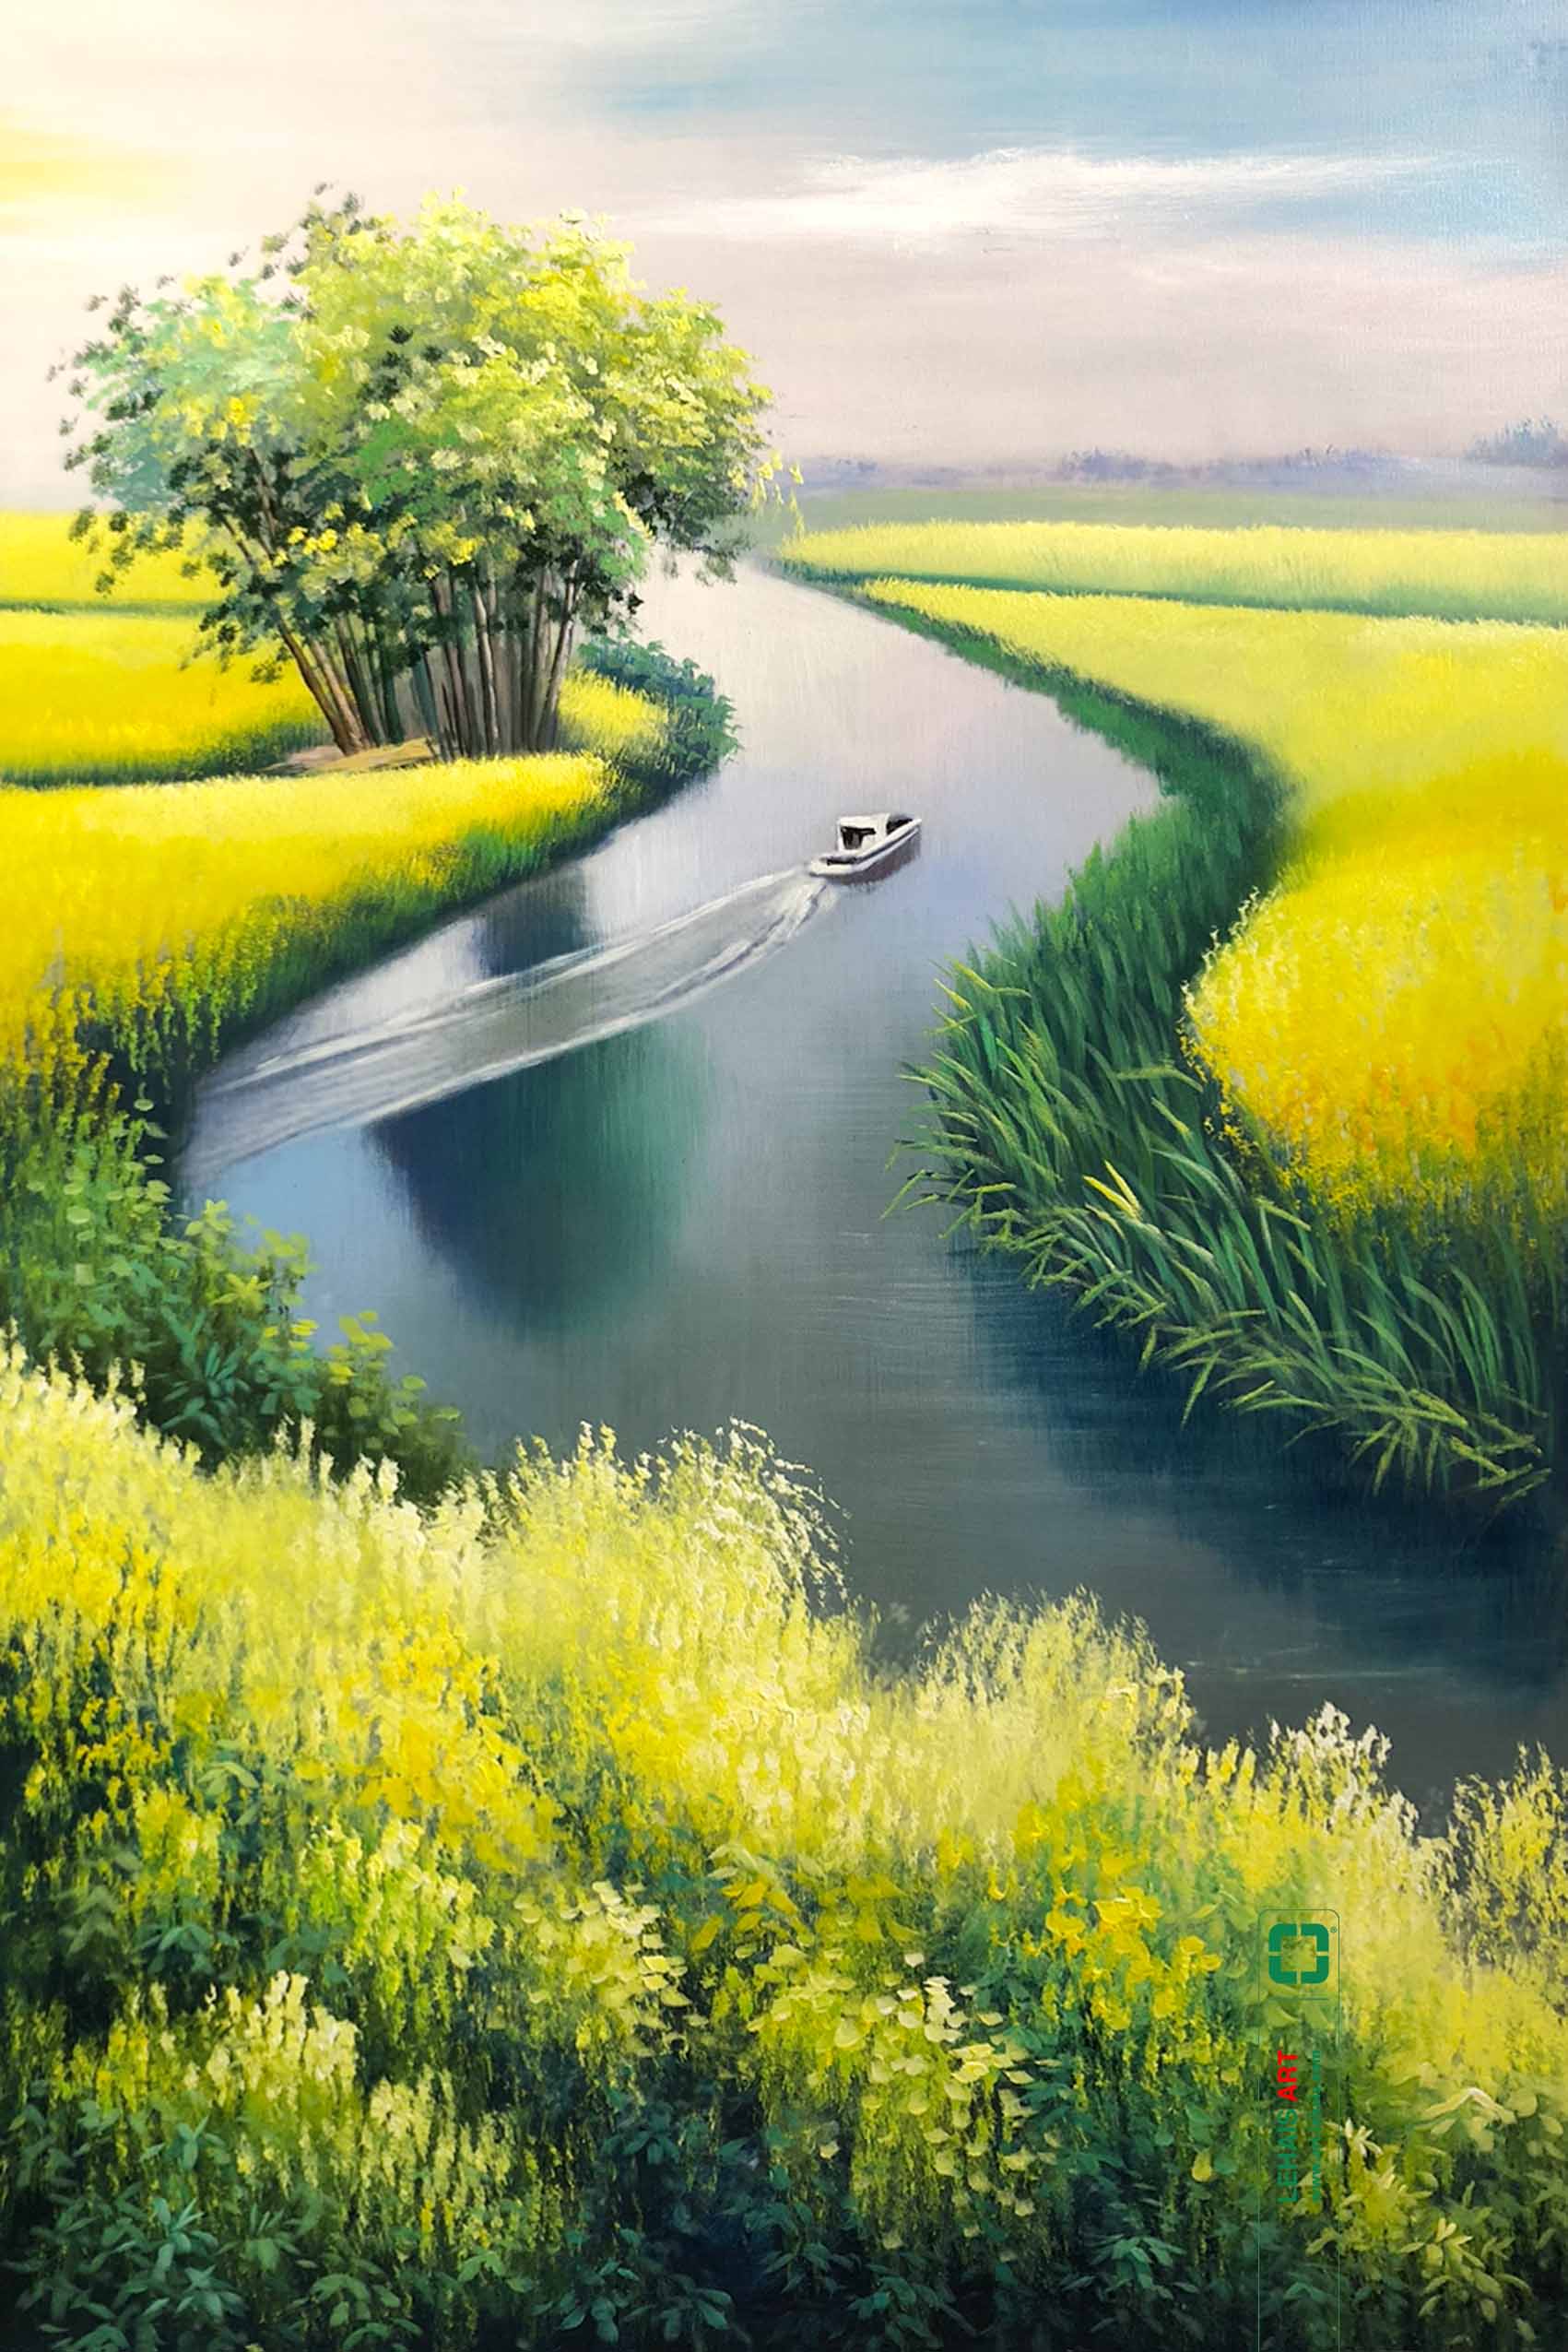 Tranh sơn dầu phong cảnh cánh đống sông nước - TSD636LHAR